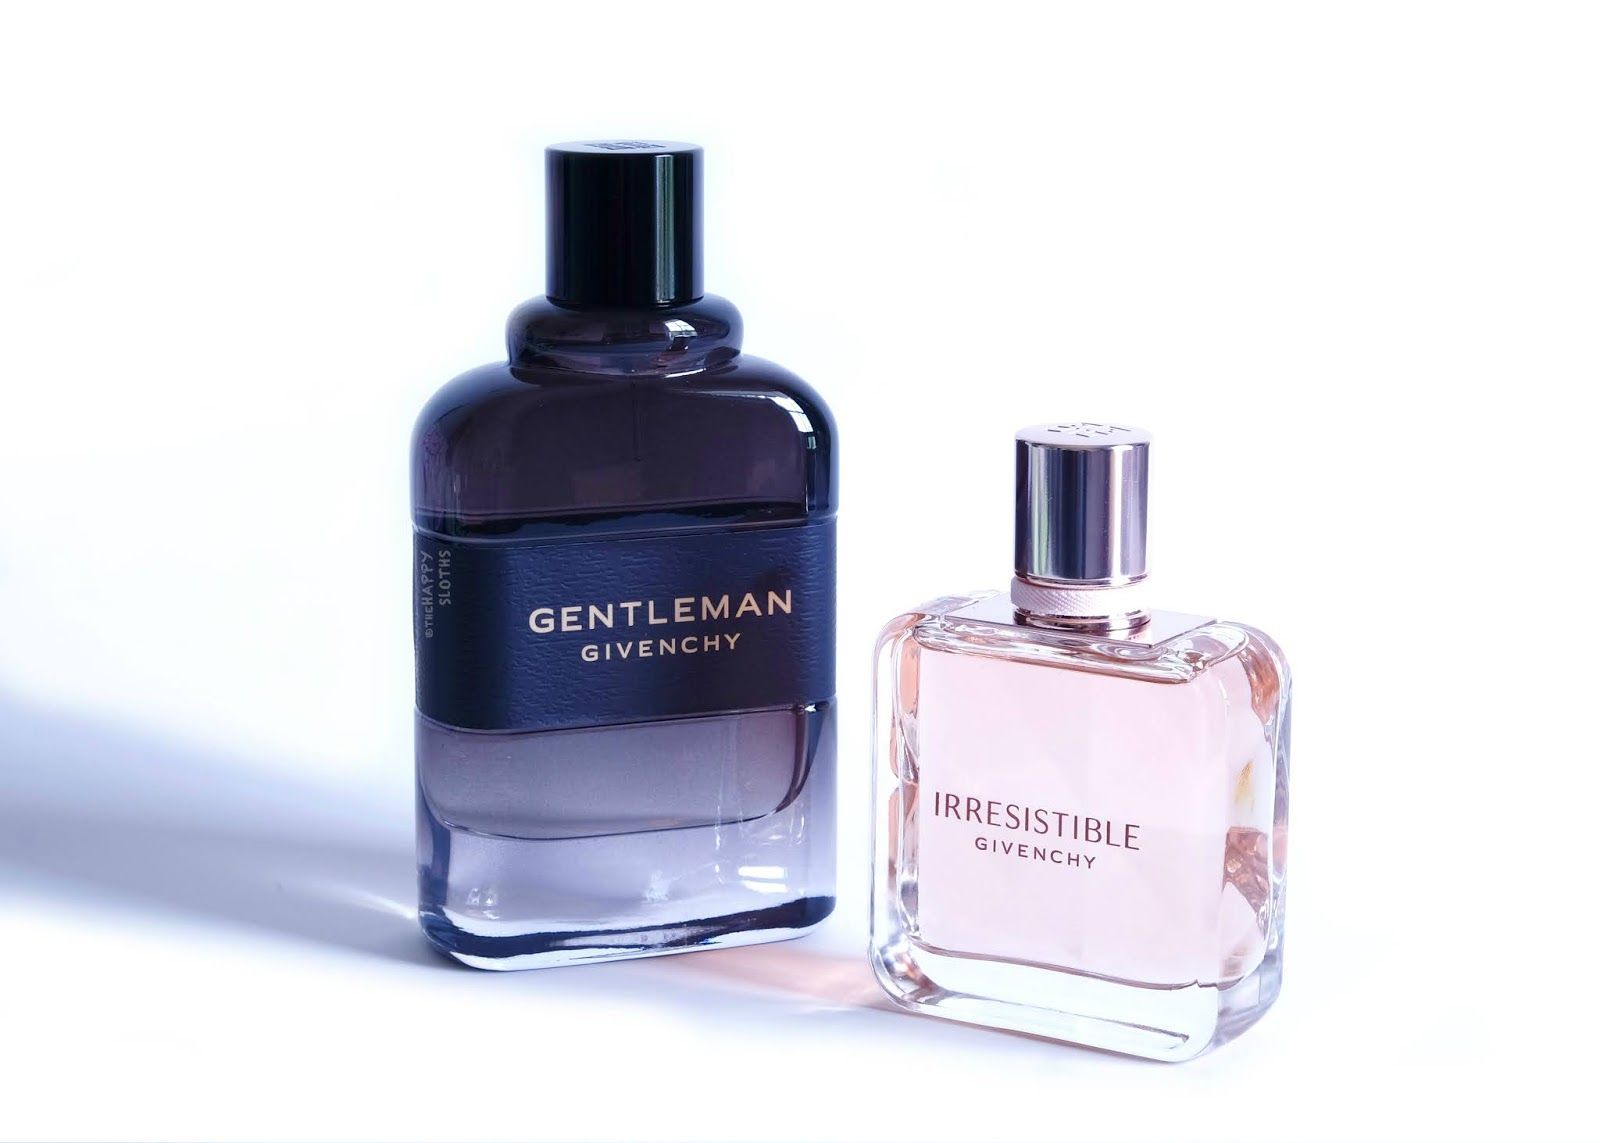 Givenchy Gentleman Boisee Eau De Parfum For Men 50ml at Ratans Online Shop - Perfumes Wholesale and Retailer Fragrance